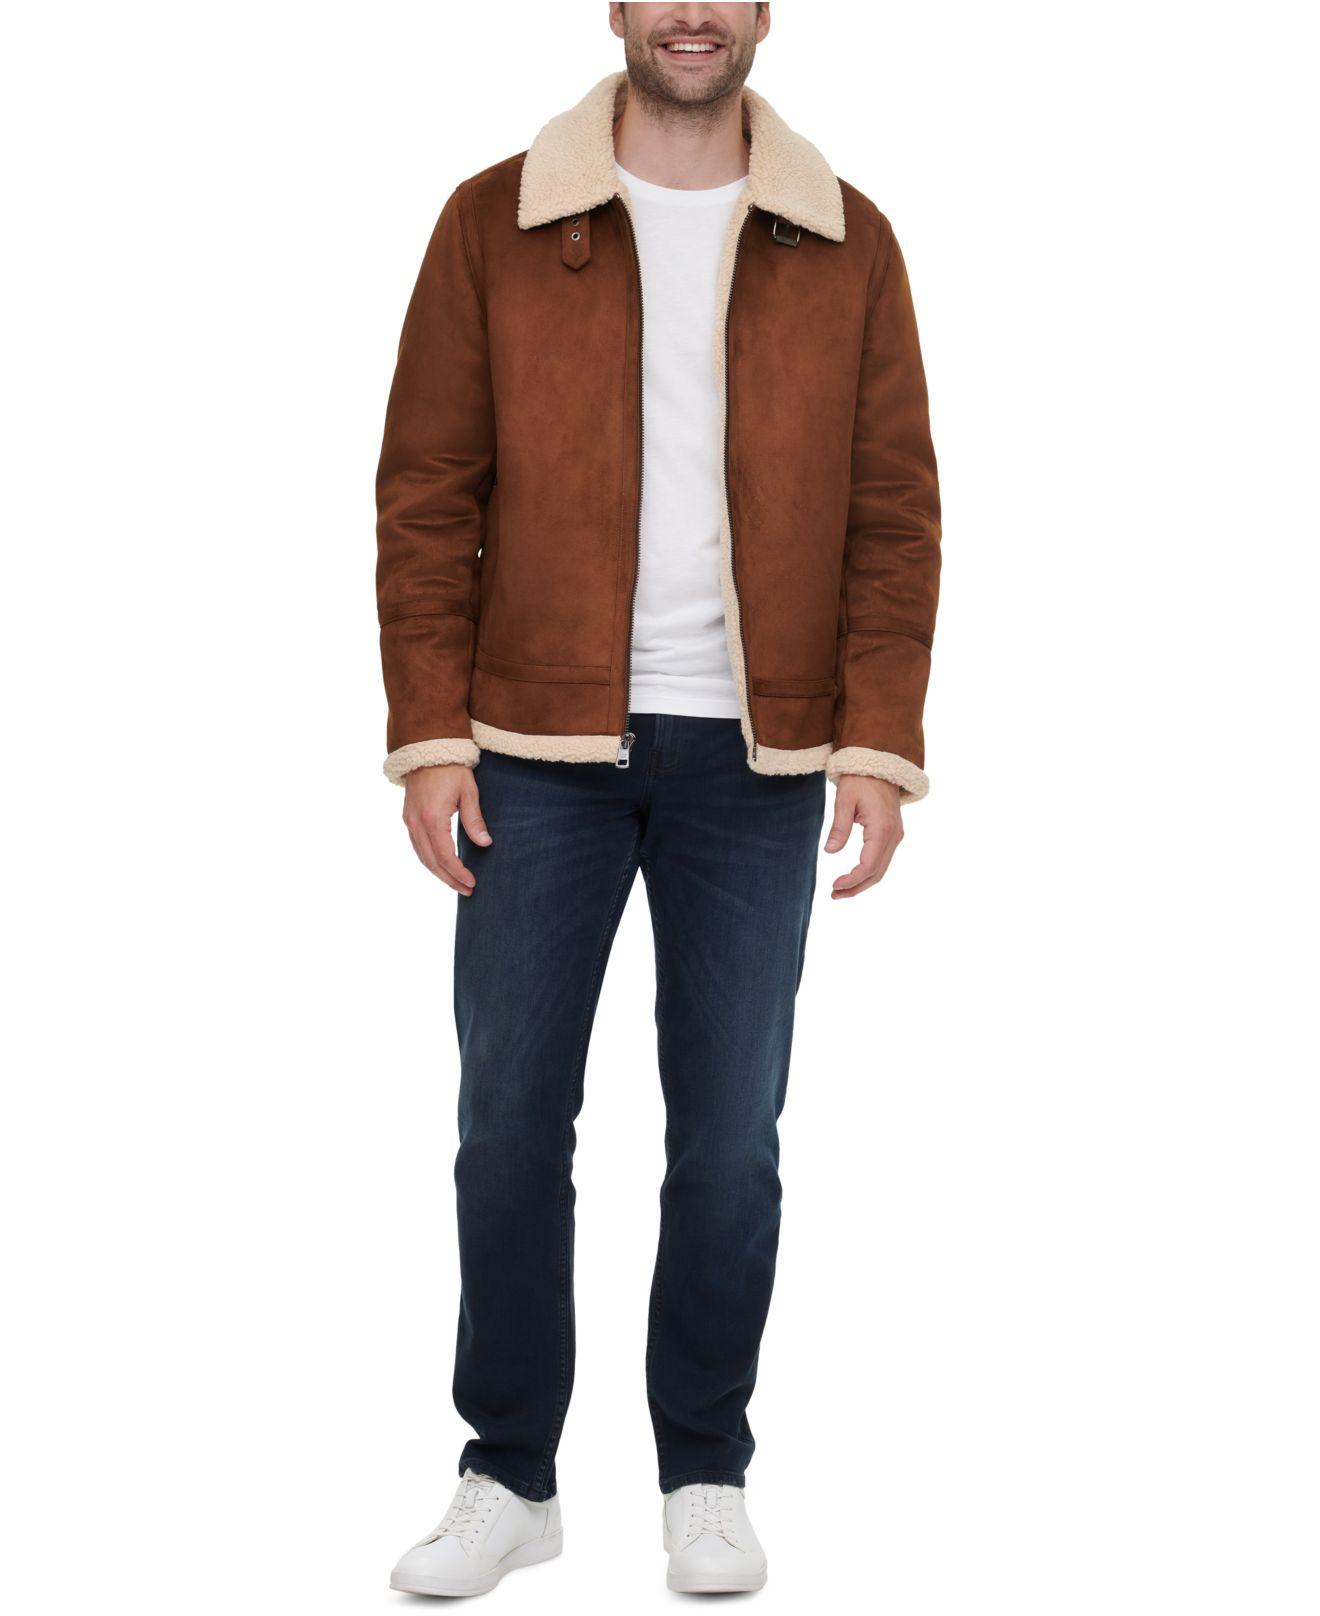 Calvin Klein Fleece Faux-shearling Jacket in Cognac (Brown) for Men - Lyst